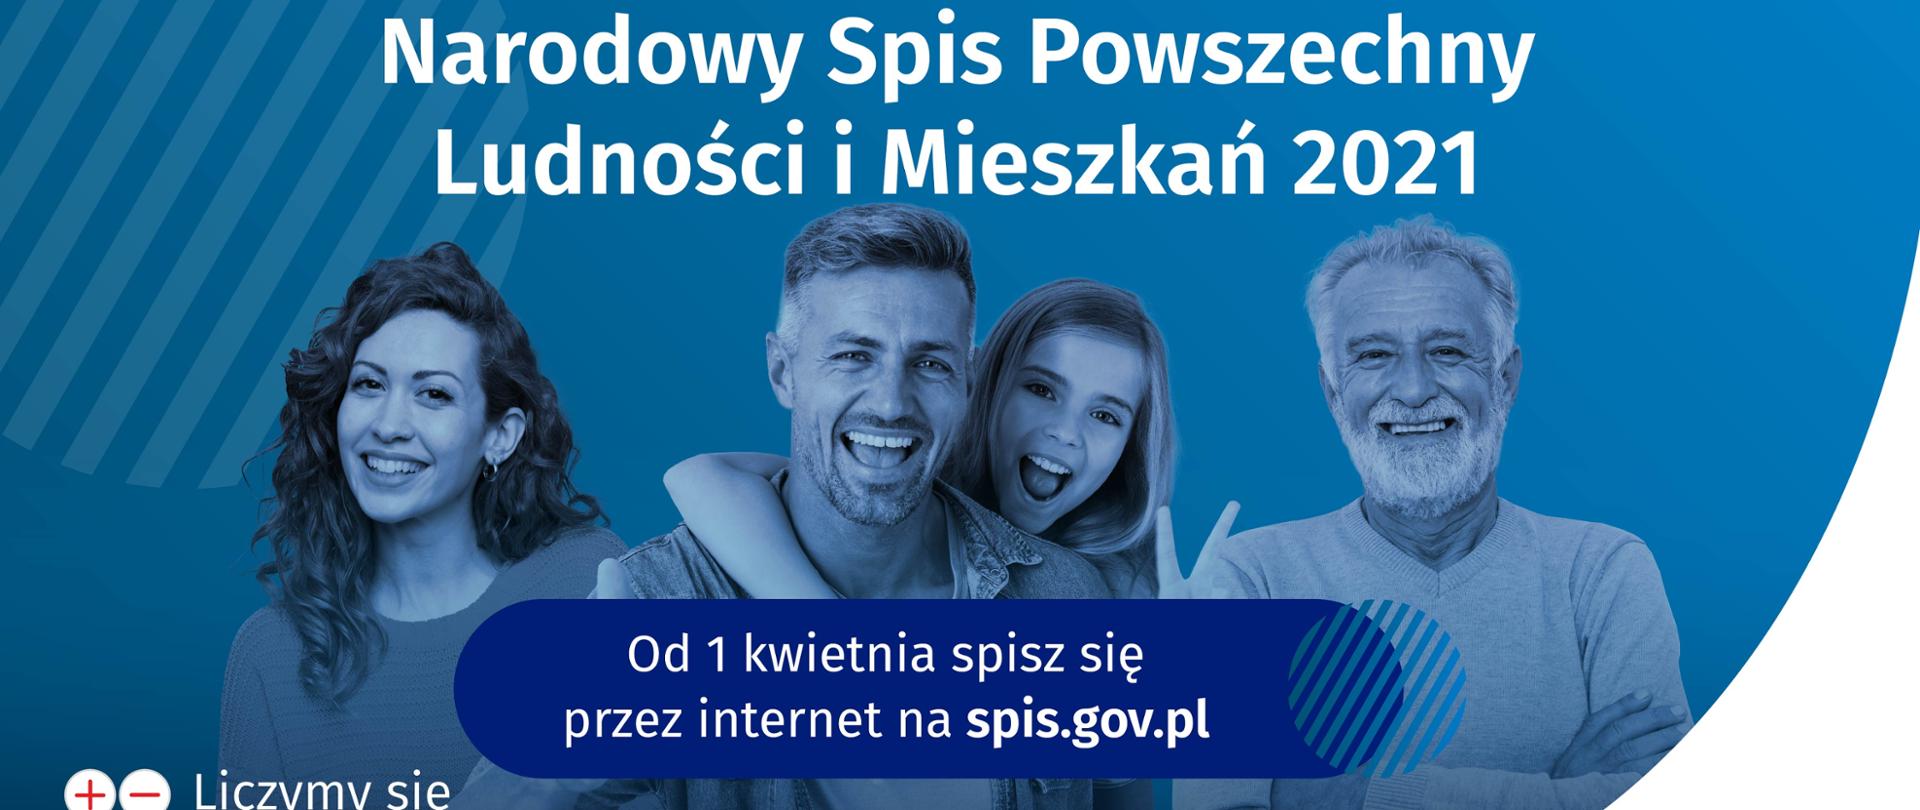 W górnej części plakatu znajduje się napis Narodowy Spis Powszechny Ludności i Mieszkań 2021, w środkowej części znajduje się napis od 1 kwietnia spisz się przez internet na spis.gov.pl, w dolnej części znajduje się napis Liczy się DLA POLSKI. W tyle znajdują się ludzie